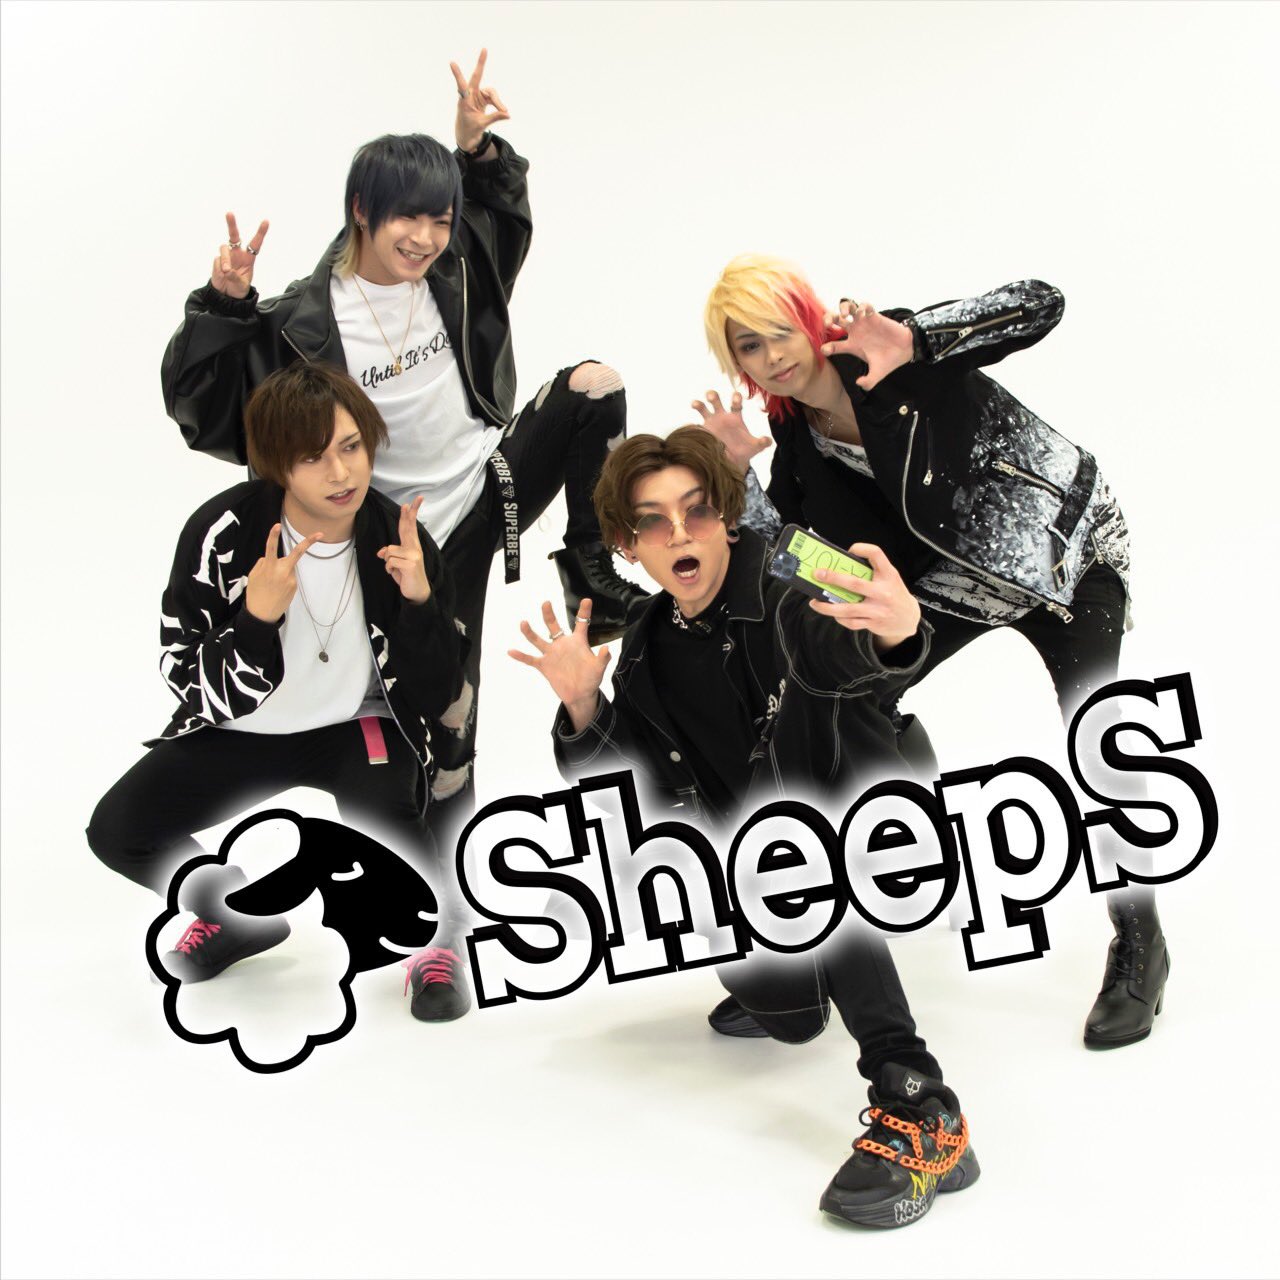 SheepS